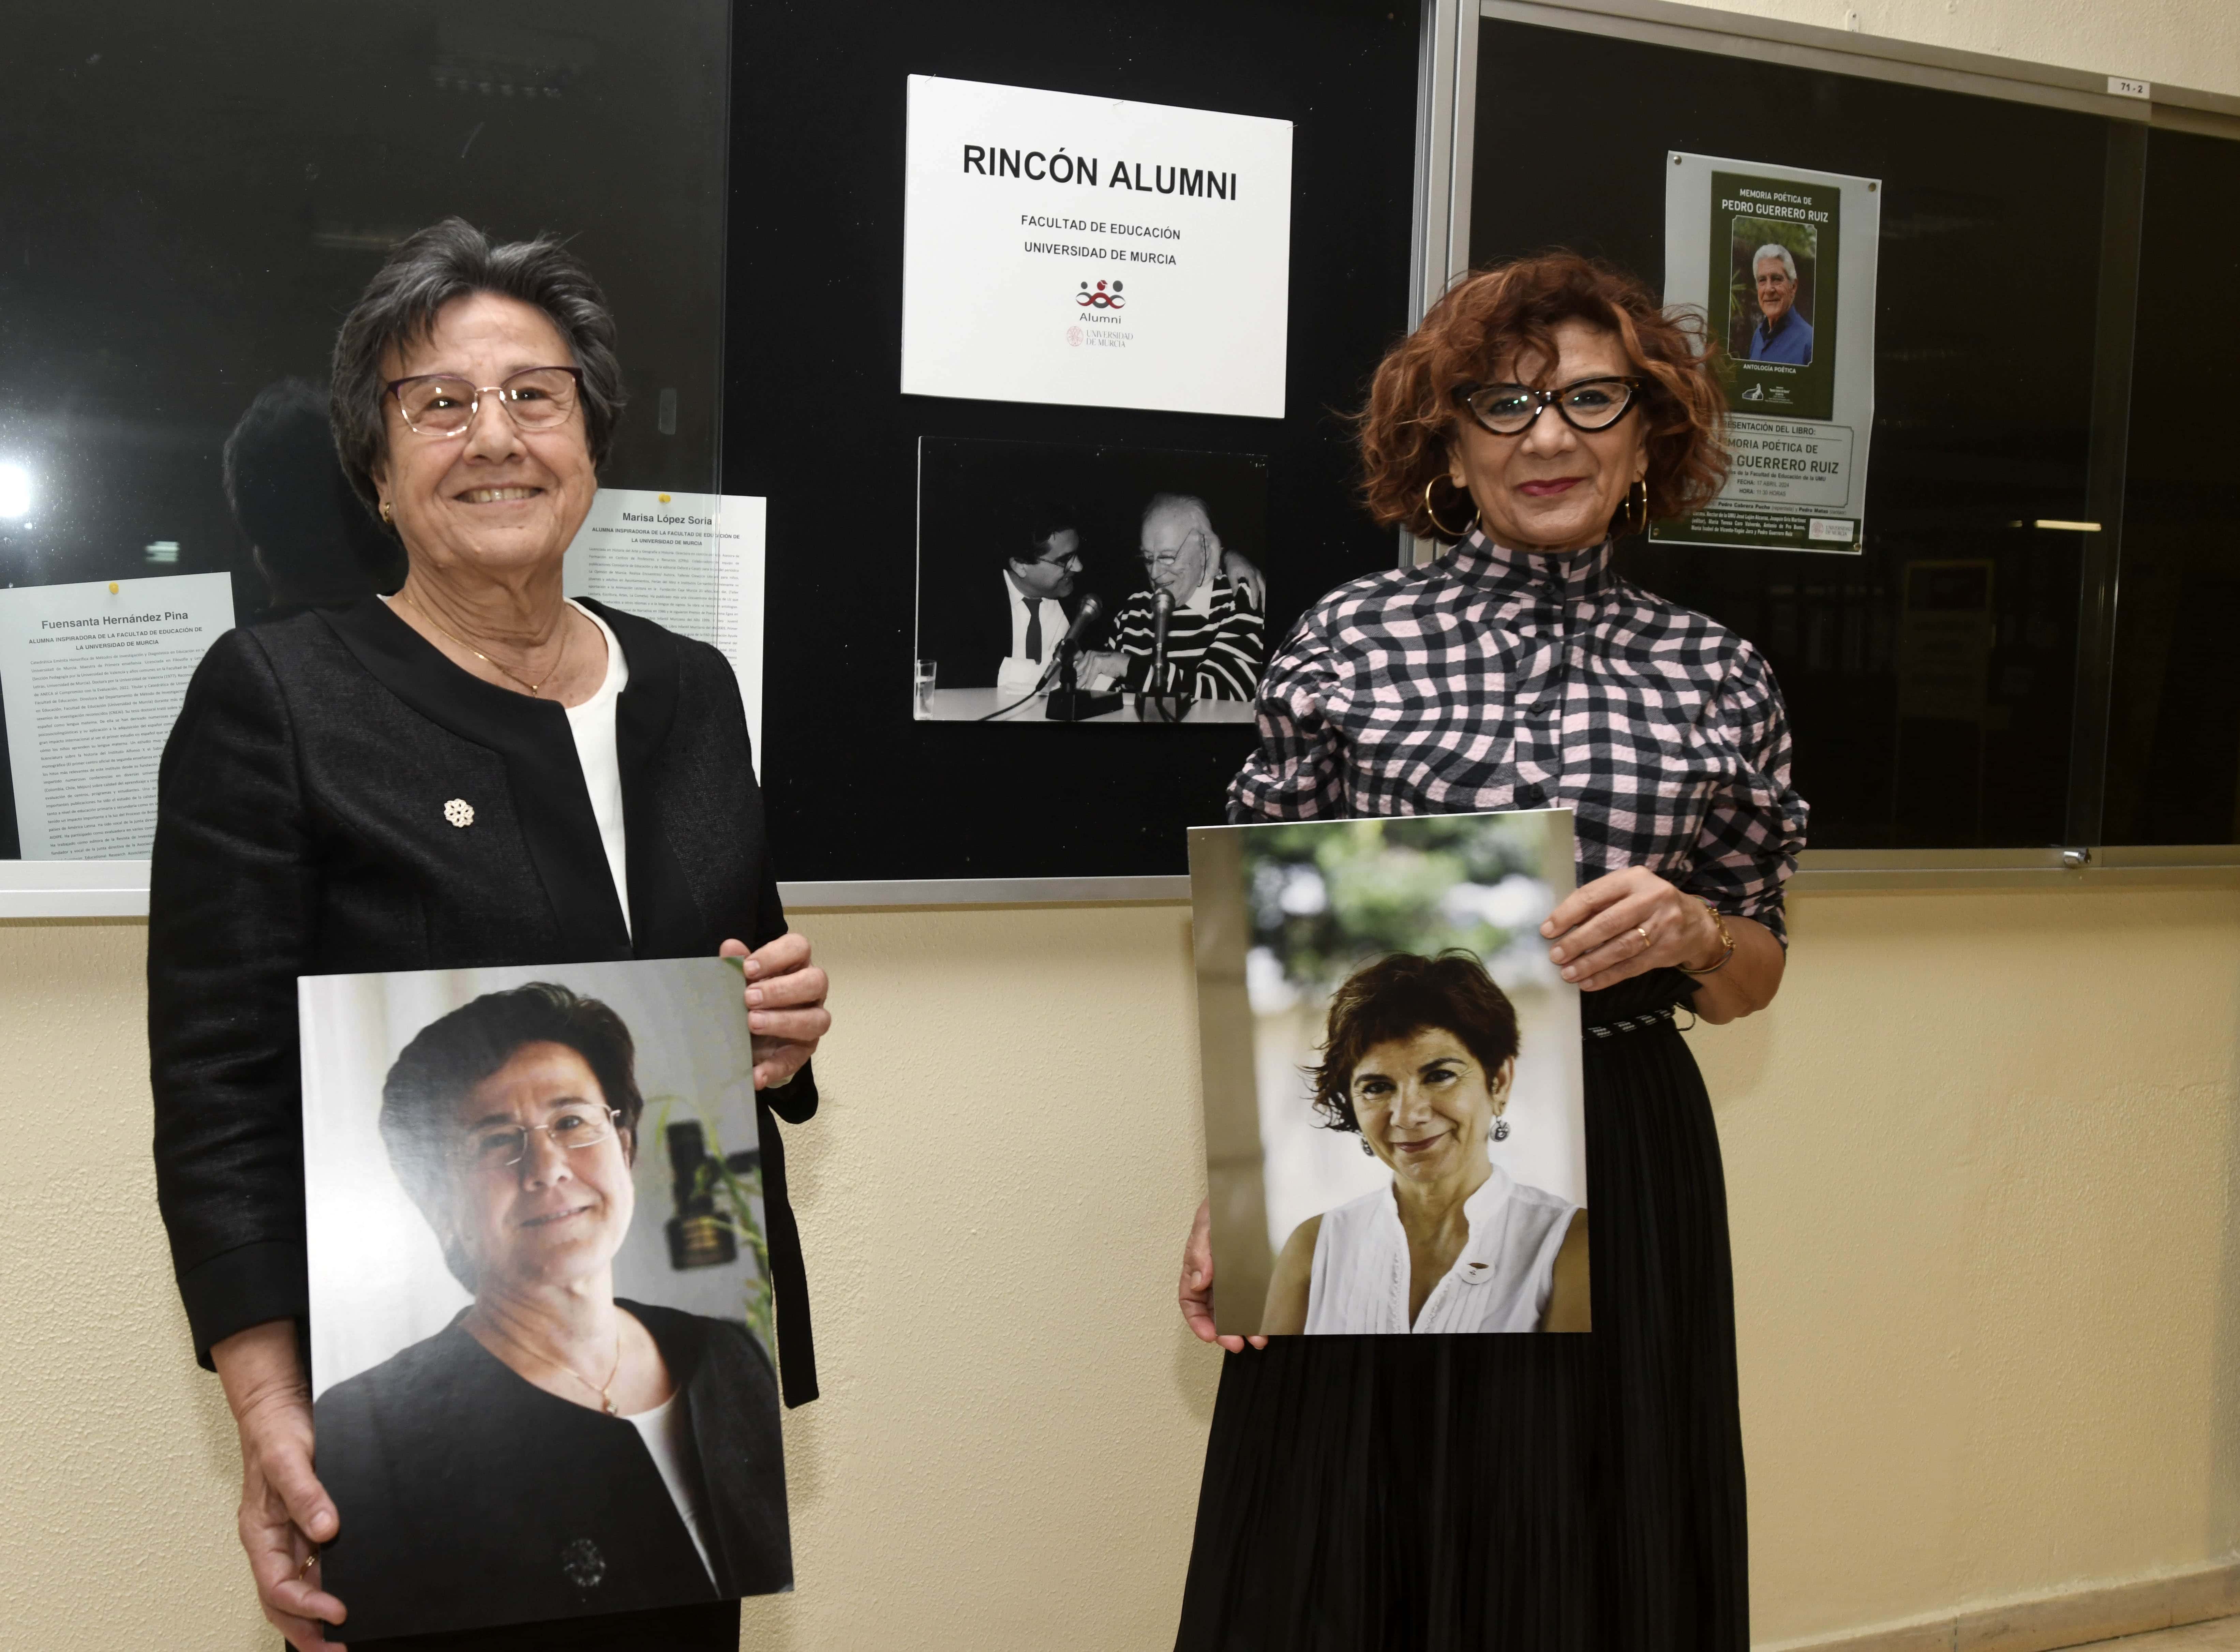 La Facultad de Educación incorpora a Marisa López Soria y Fuensanta Hernández Pina a su Rincón Alumni